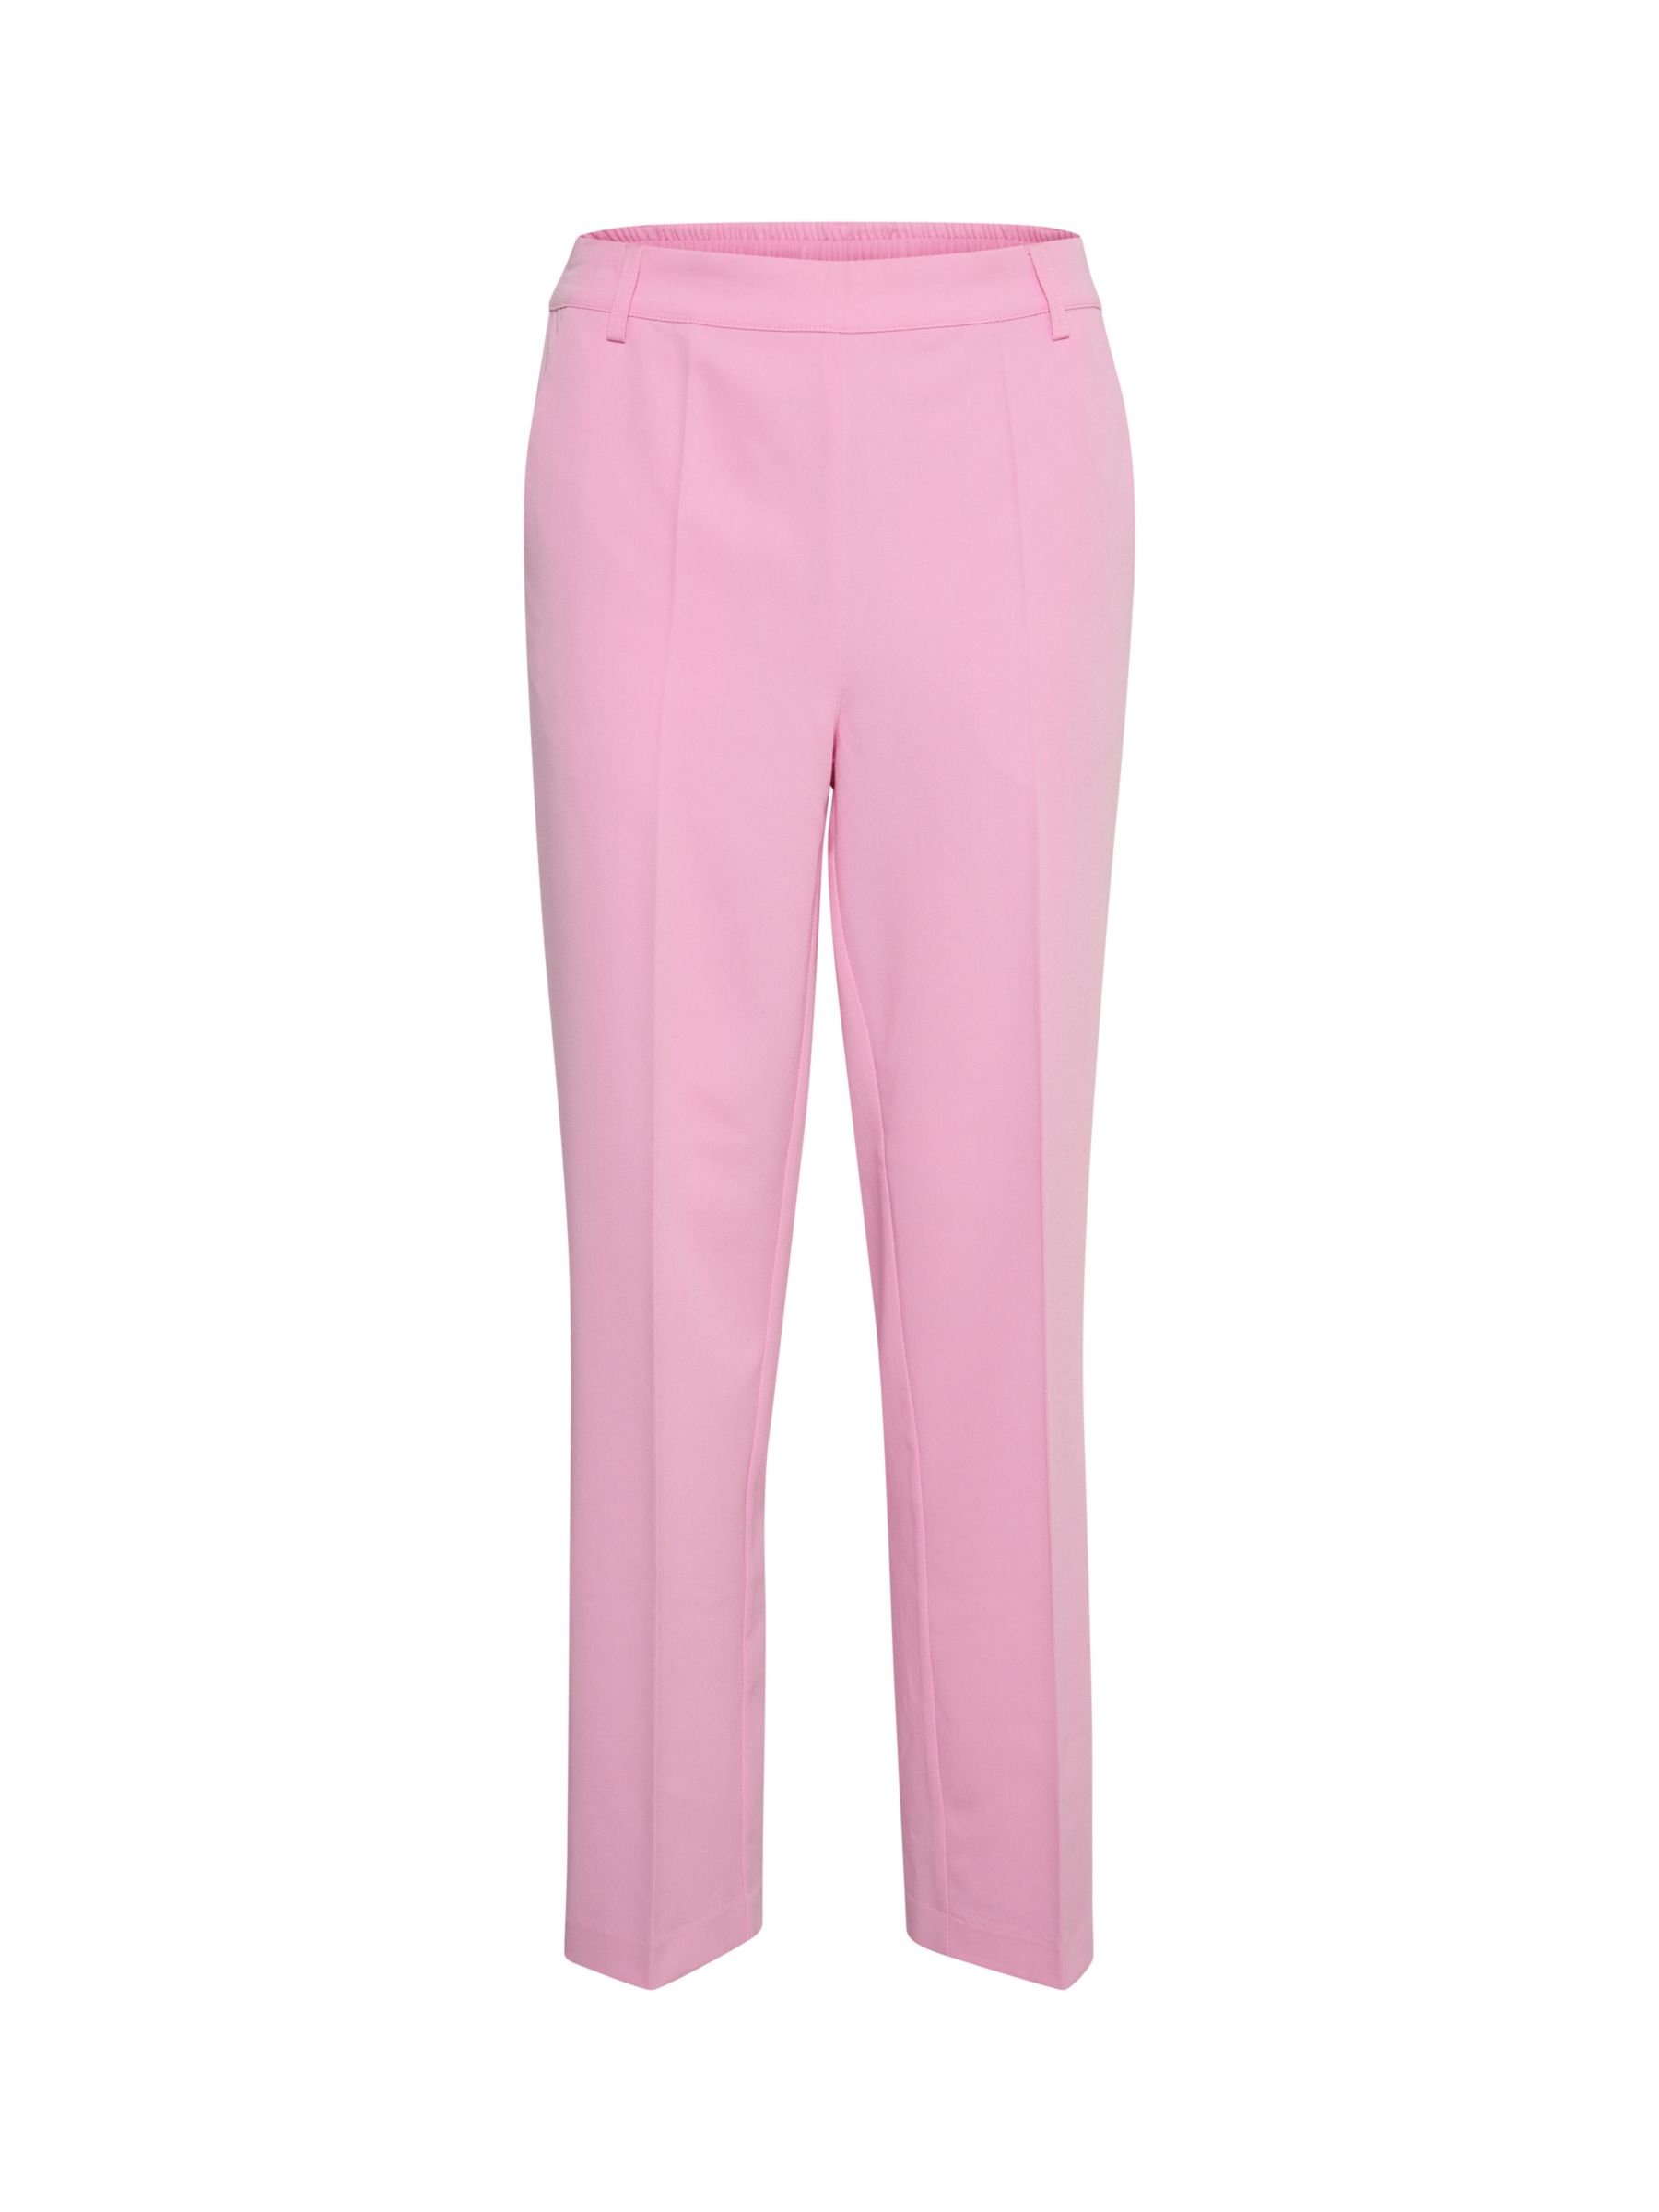 KAFFE Sakura Slim Tailored Trousers, Pink Frosting at John Lewis & Partners